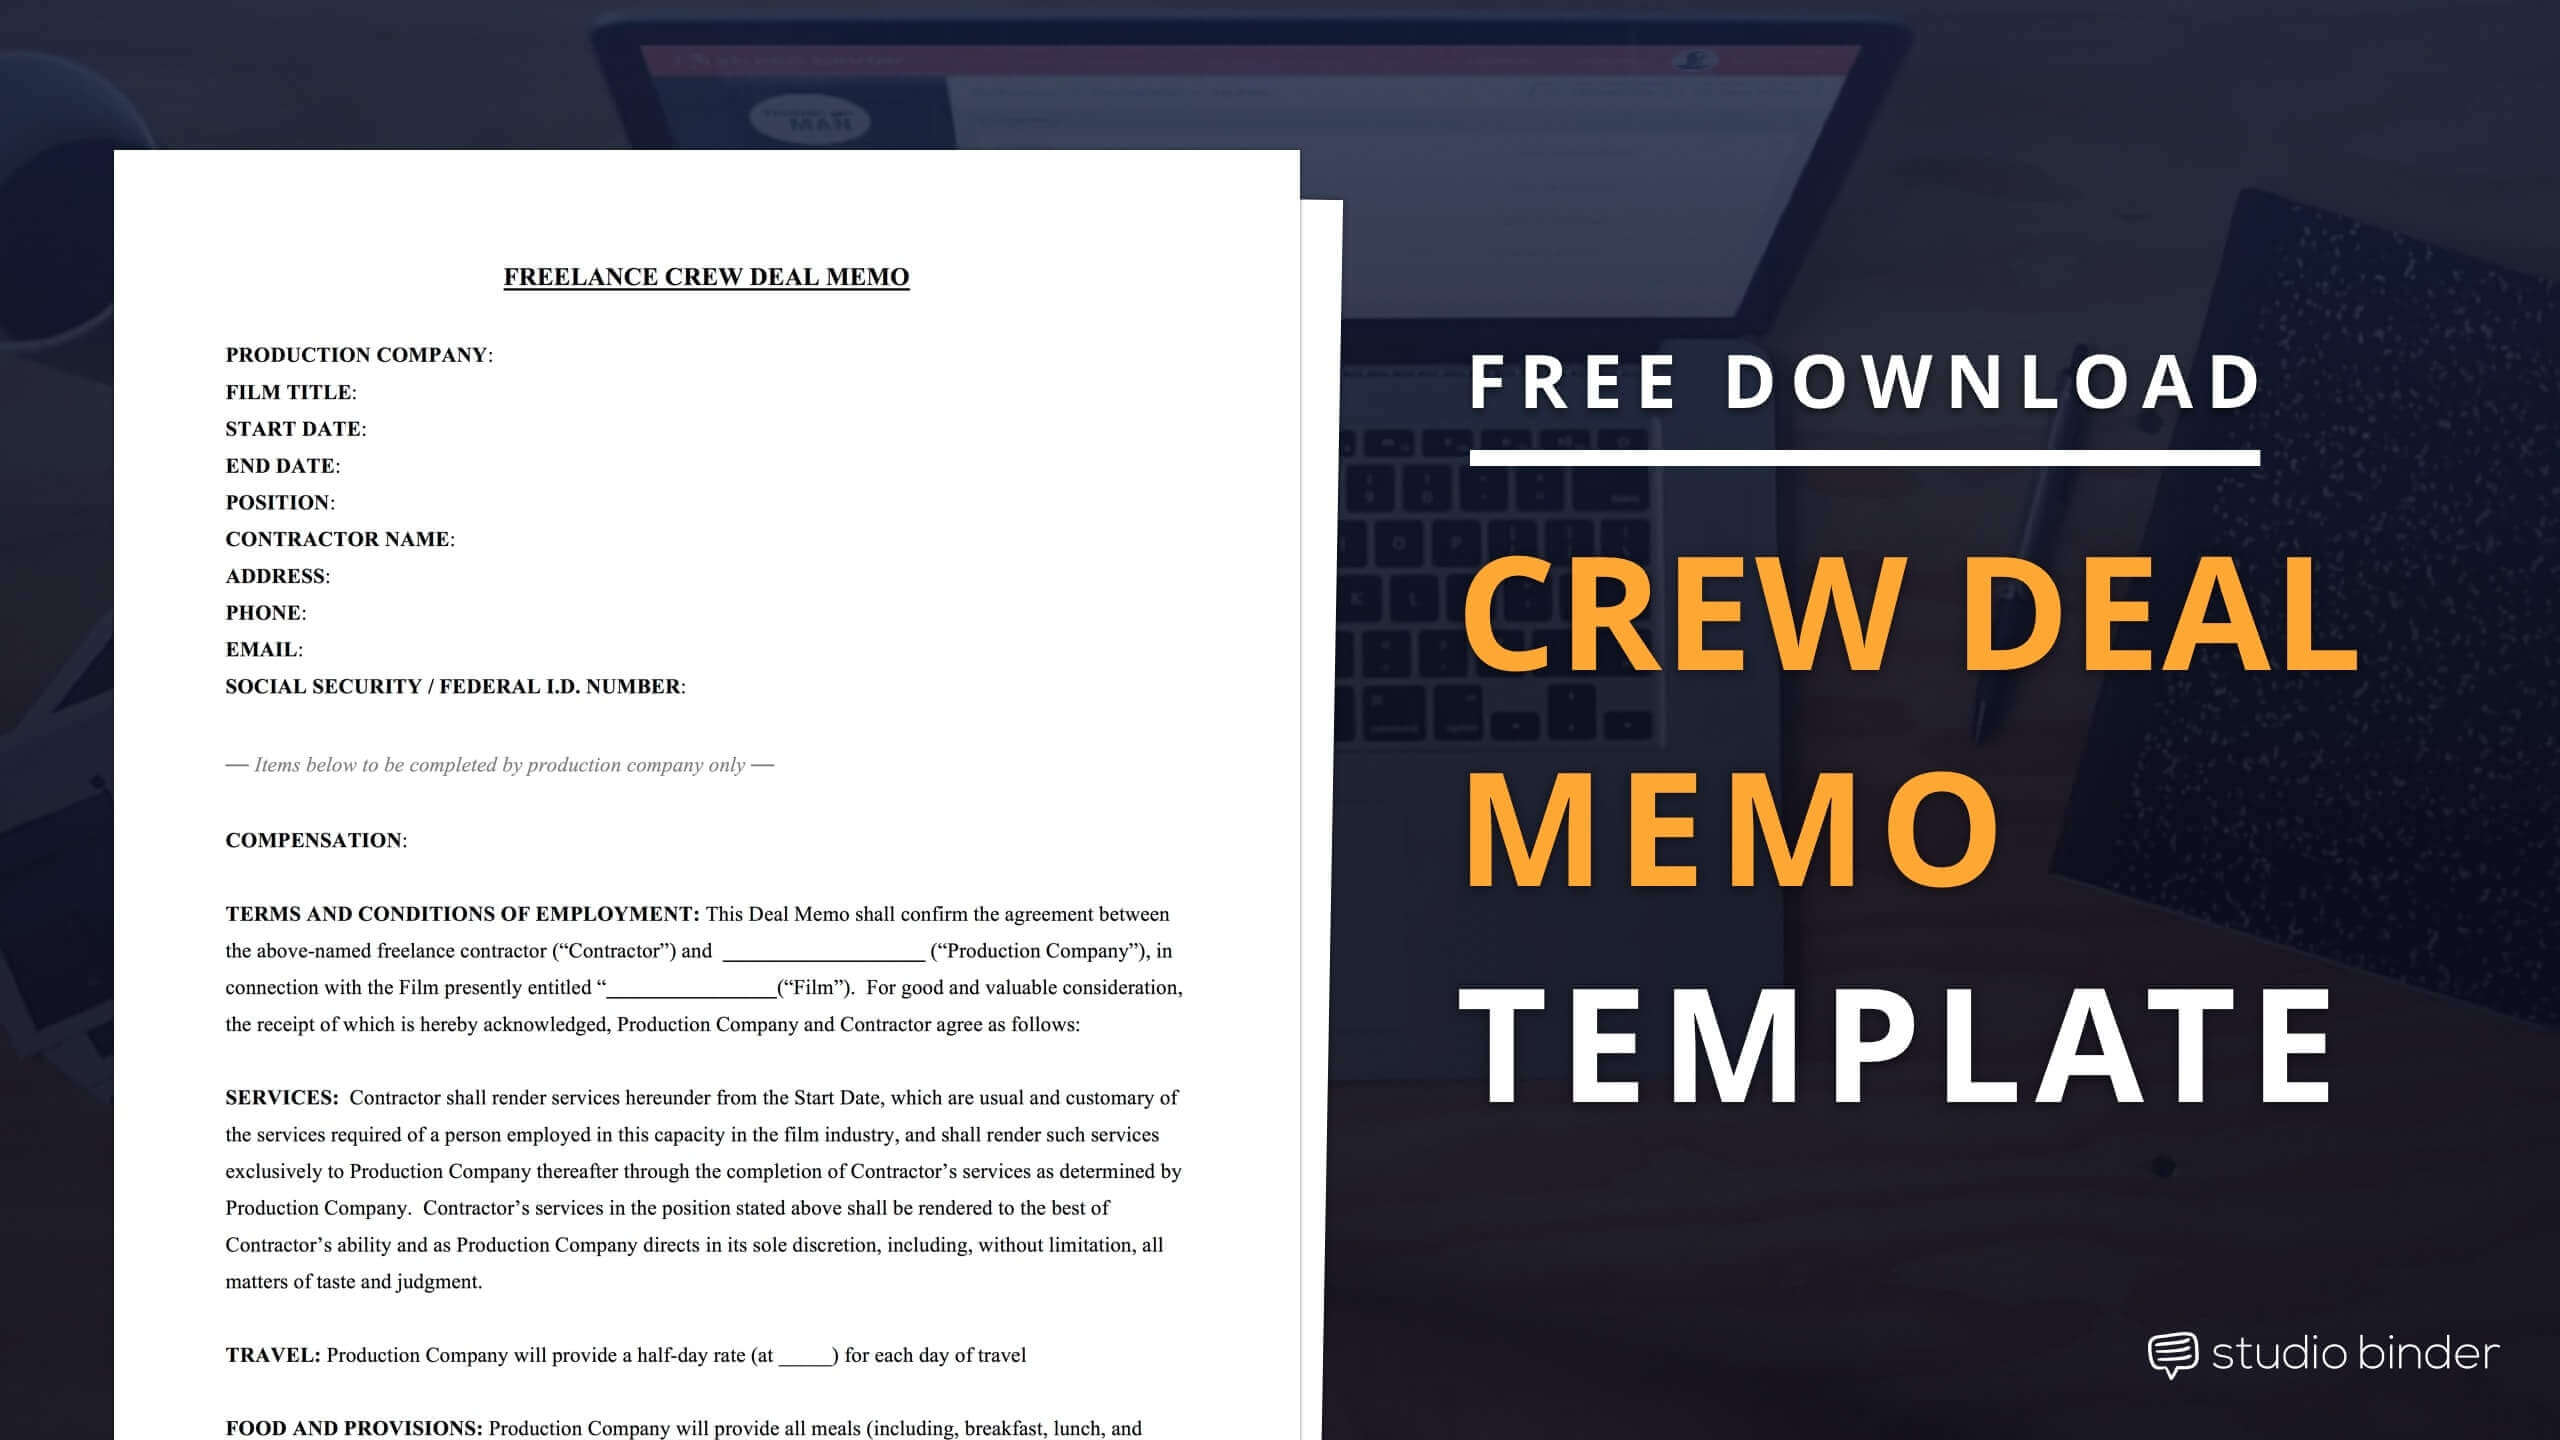 Crew Deal Memo Template Free Download - StudioBinder